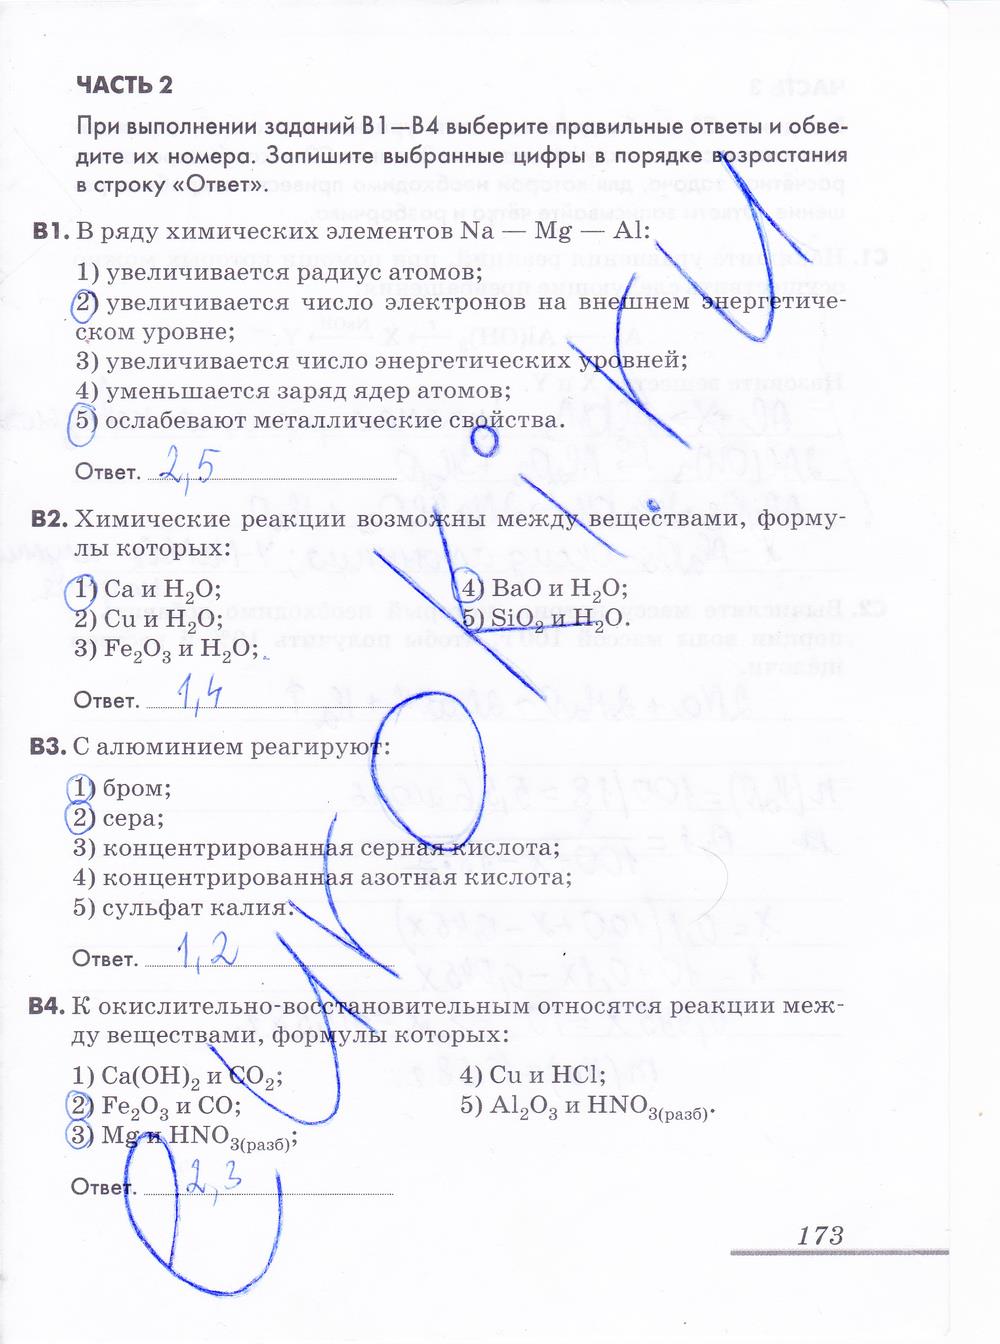 гдз 9 класс рабочая тетрадь страница 173 химия Еремин, Дроздов